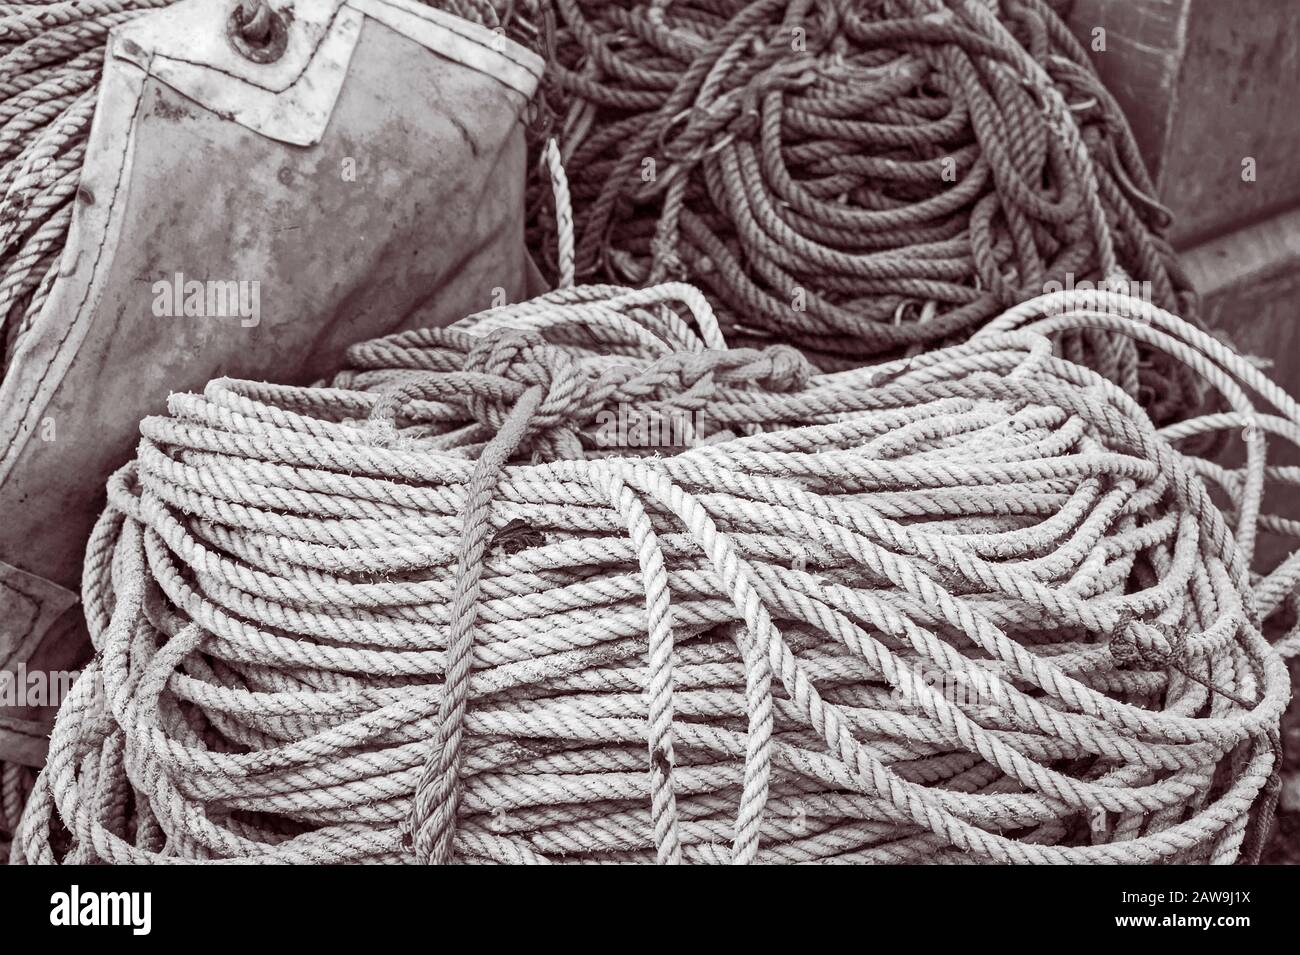 Corde spoulée et labouée et ligne en nylon torsadé, utilisée pour la pêche commerciale à la palangre, sur la rue Katlian à Sitka, Alaska, États-Unis. Pêche à la palangre, o Banque D'Images